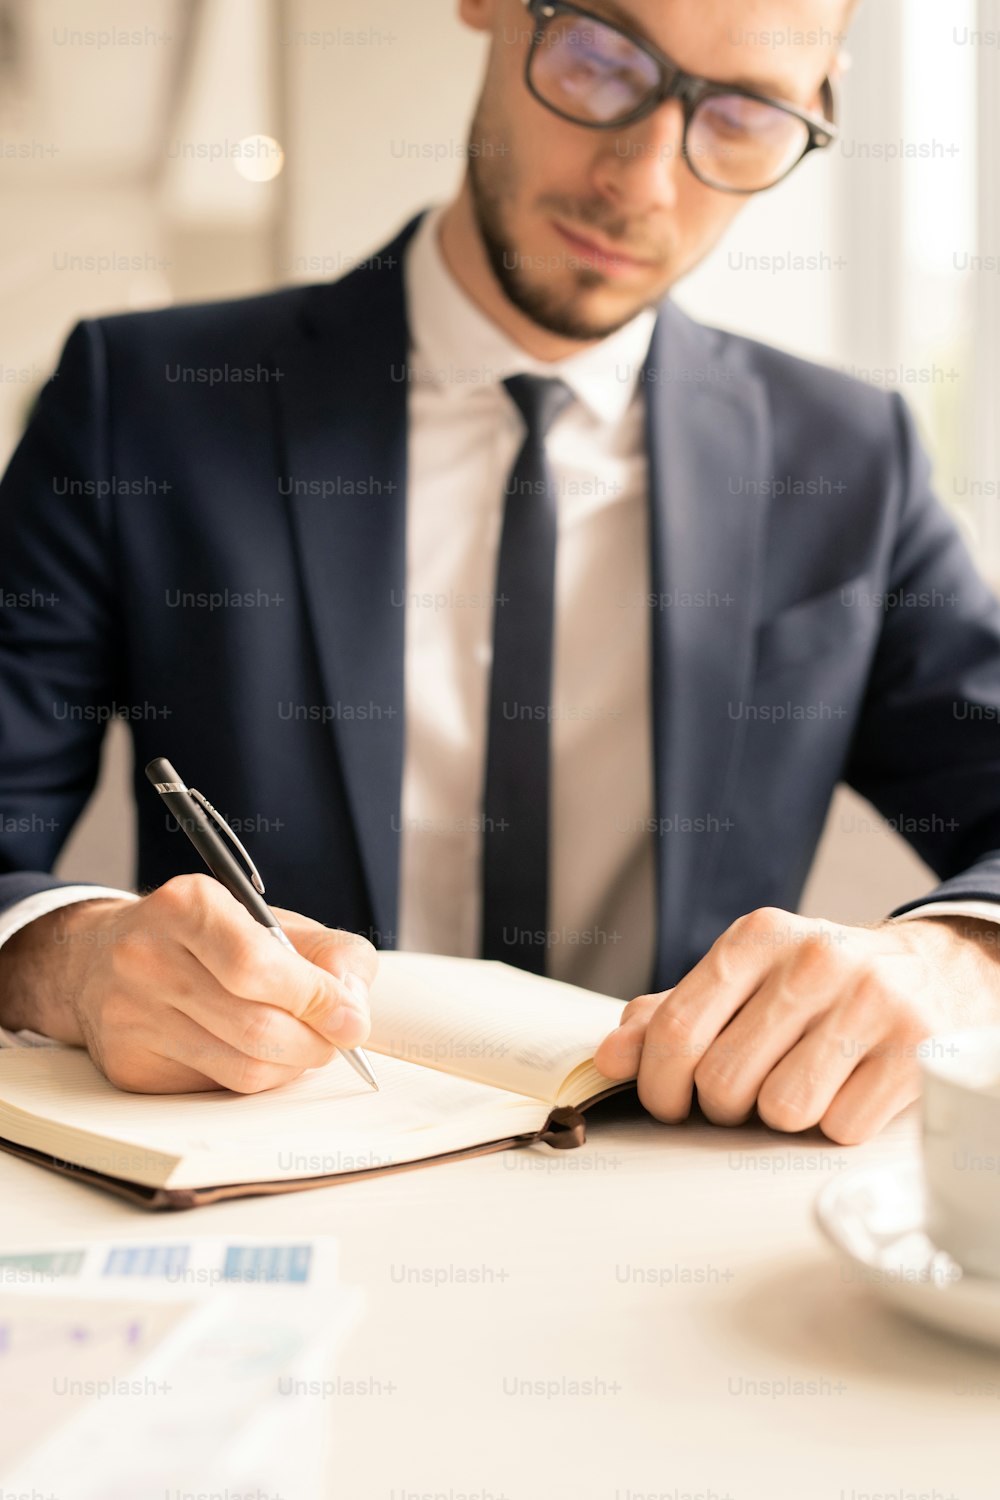 Empleado joven serio en traje sentado junto a la mesa frente al cuaderno abierto y tomando notas o puntos del plan de negocios